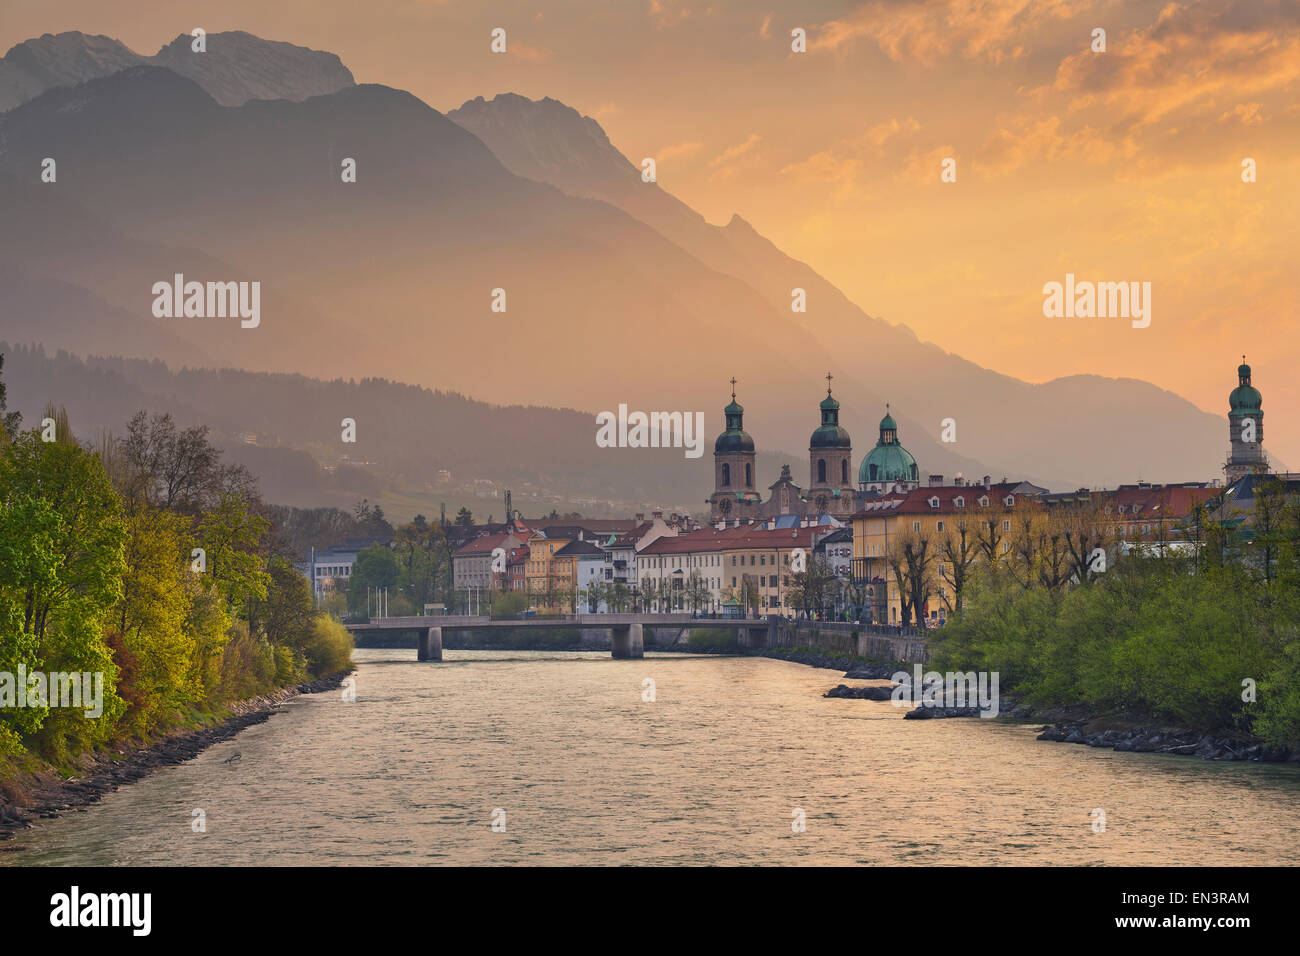 Innsbruck. Image of Innsbruck, Austria during dramatic sunrise. Stock Photo